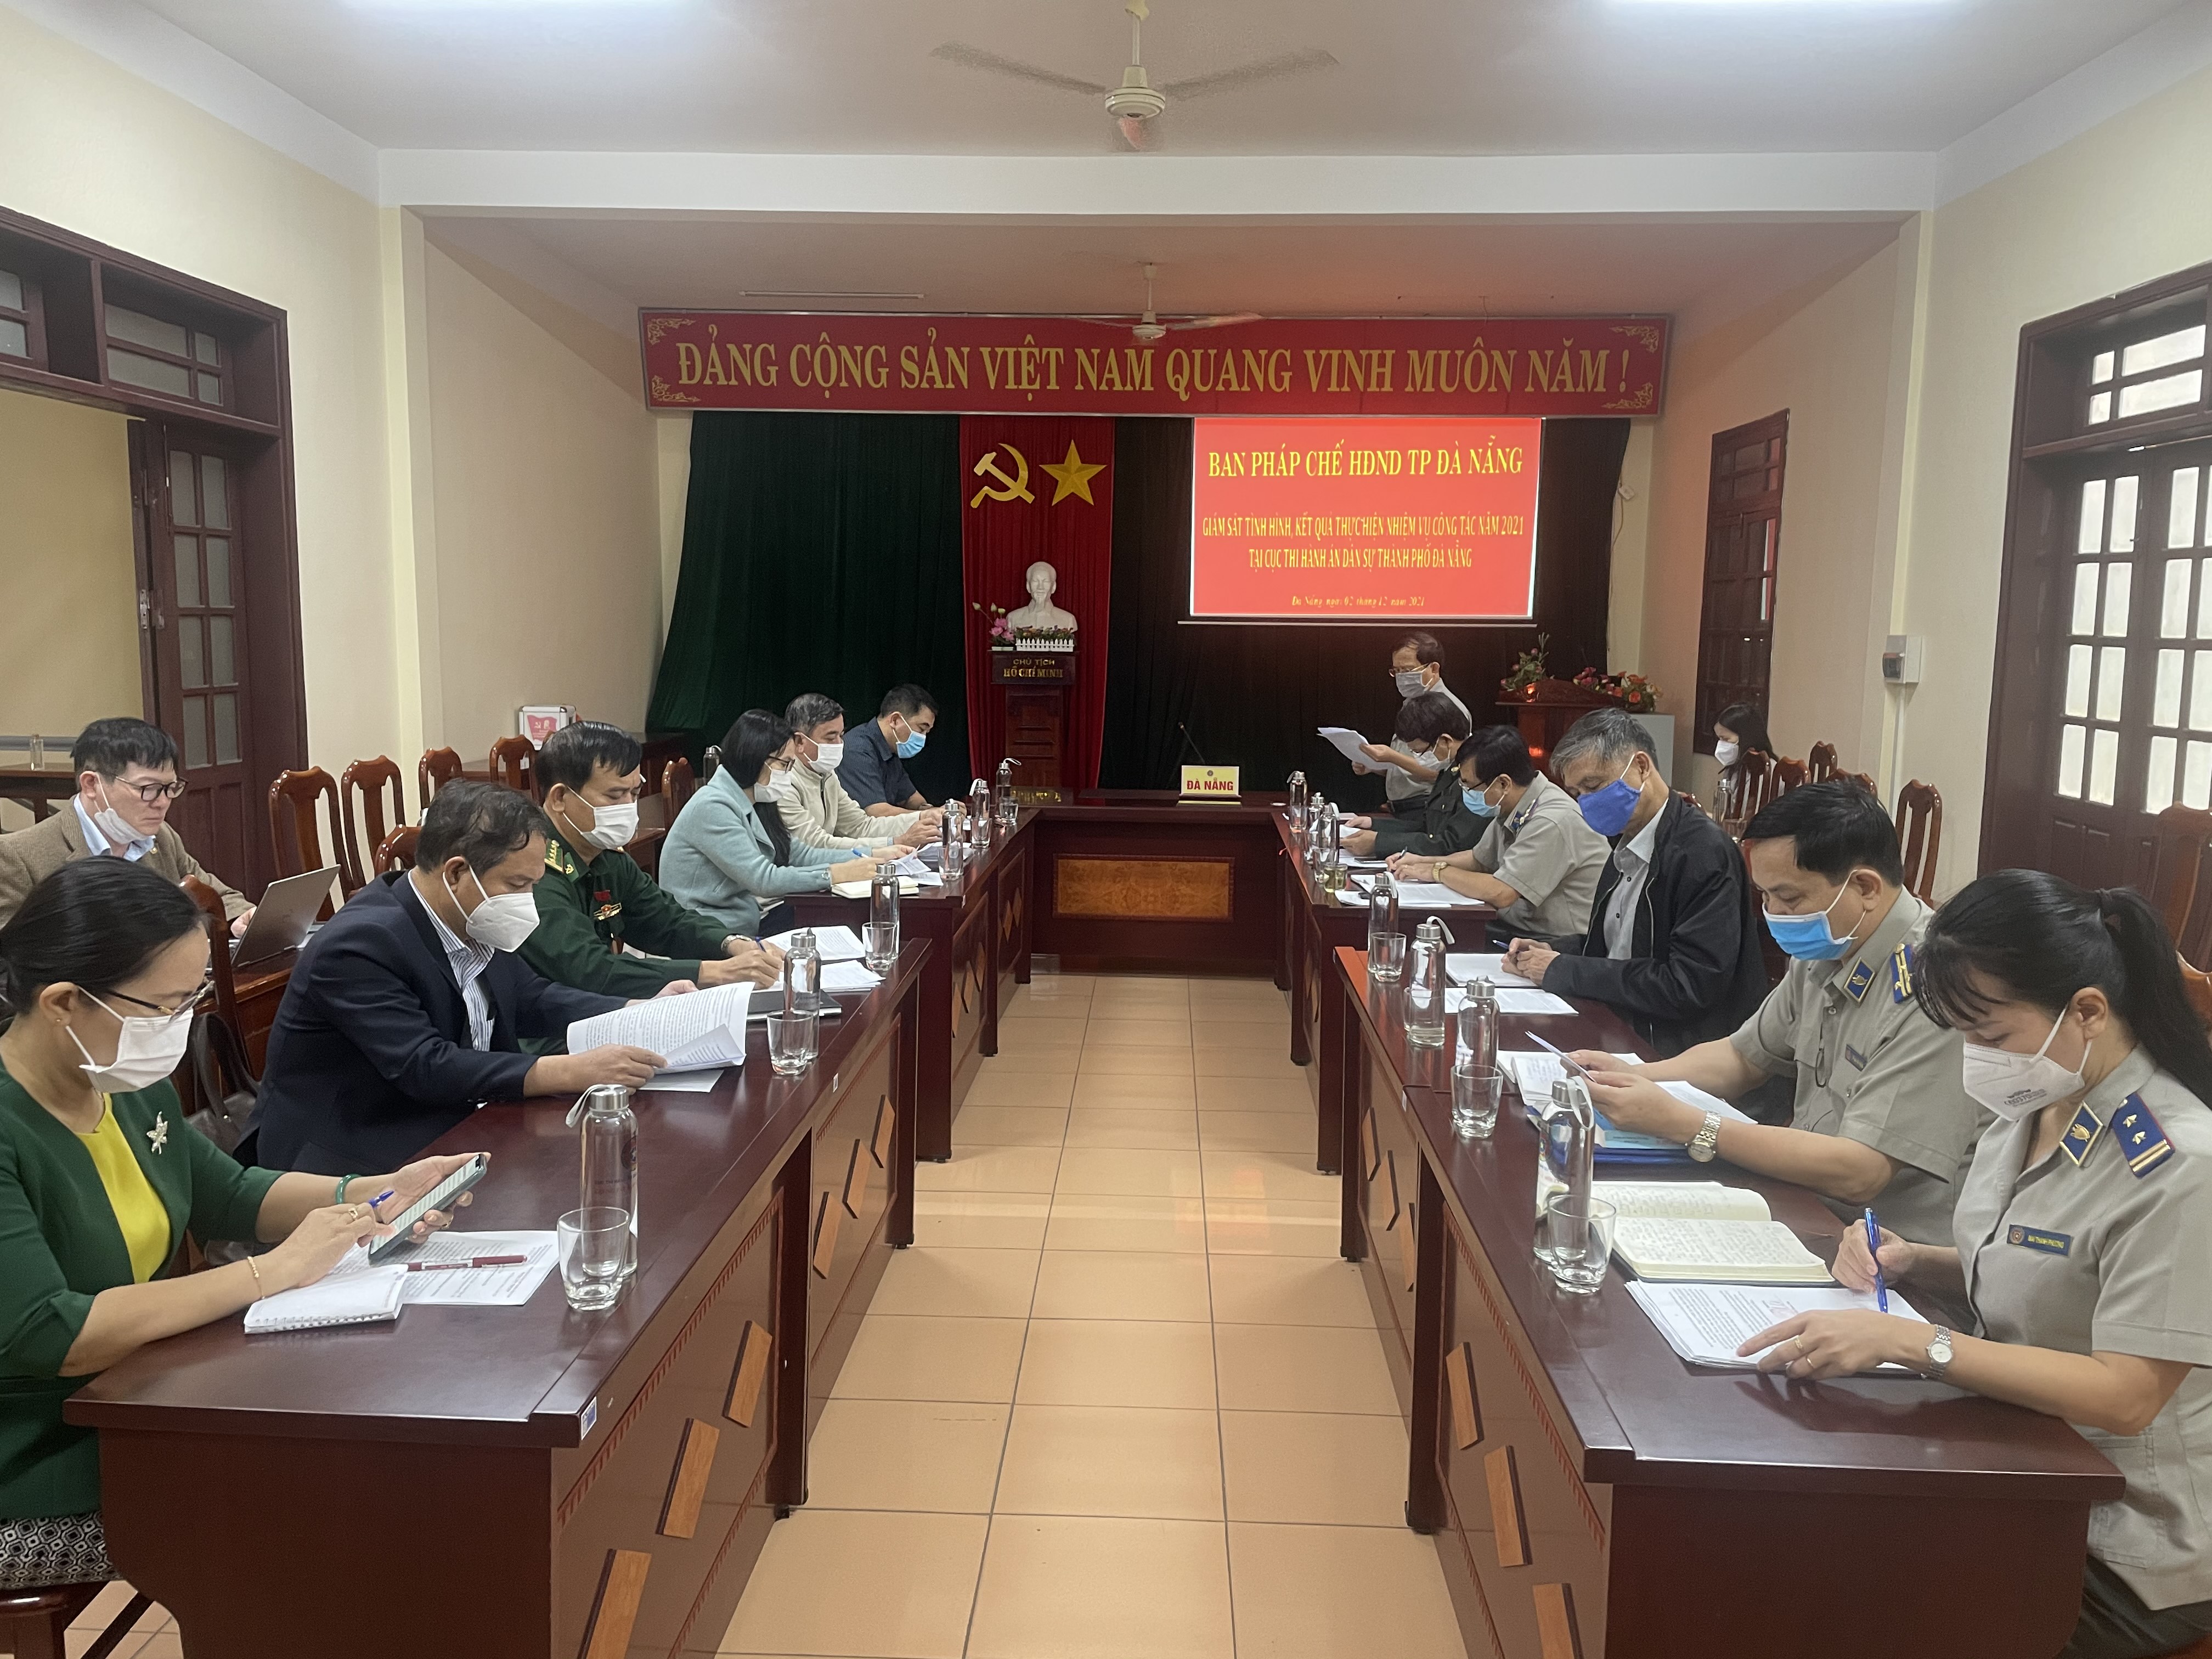 Ban Pháp chế HĐND thành phố Đà Nẵng thực hiện giám sát công tác  thi hành án dân sự năm 2021